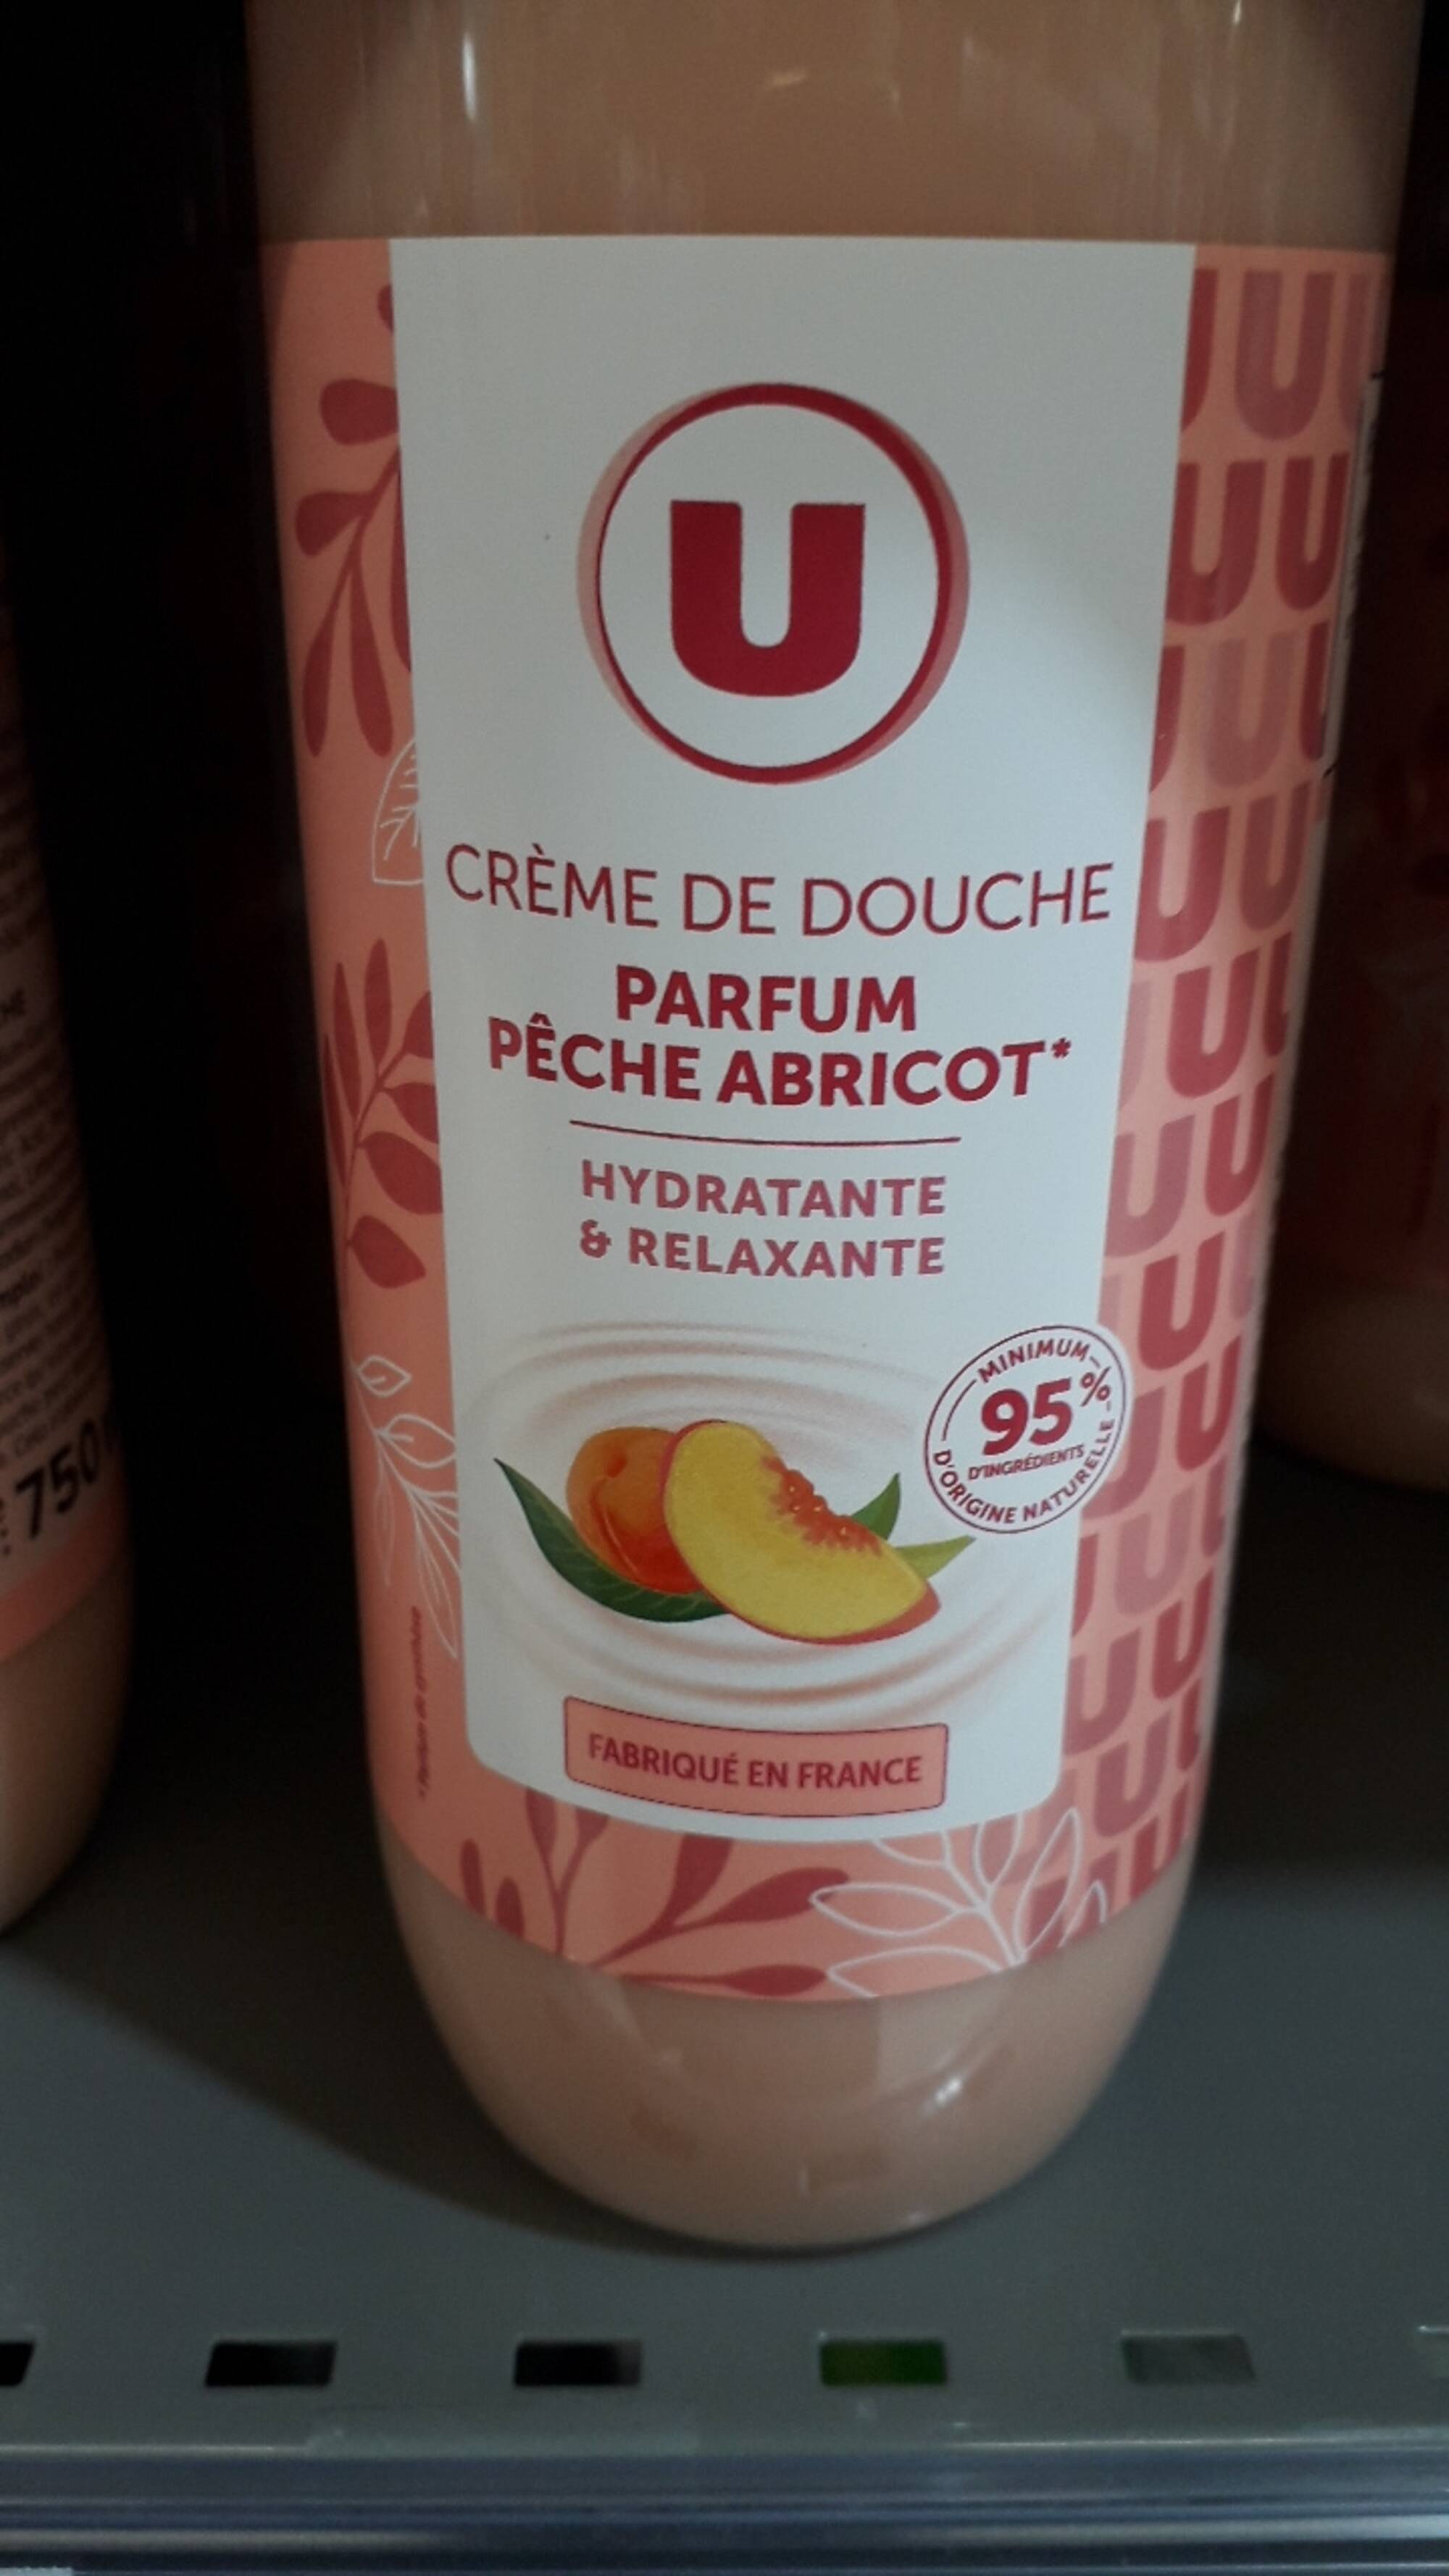 U - Crème de douche parfum pêche abricot